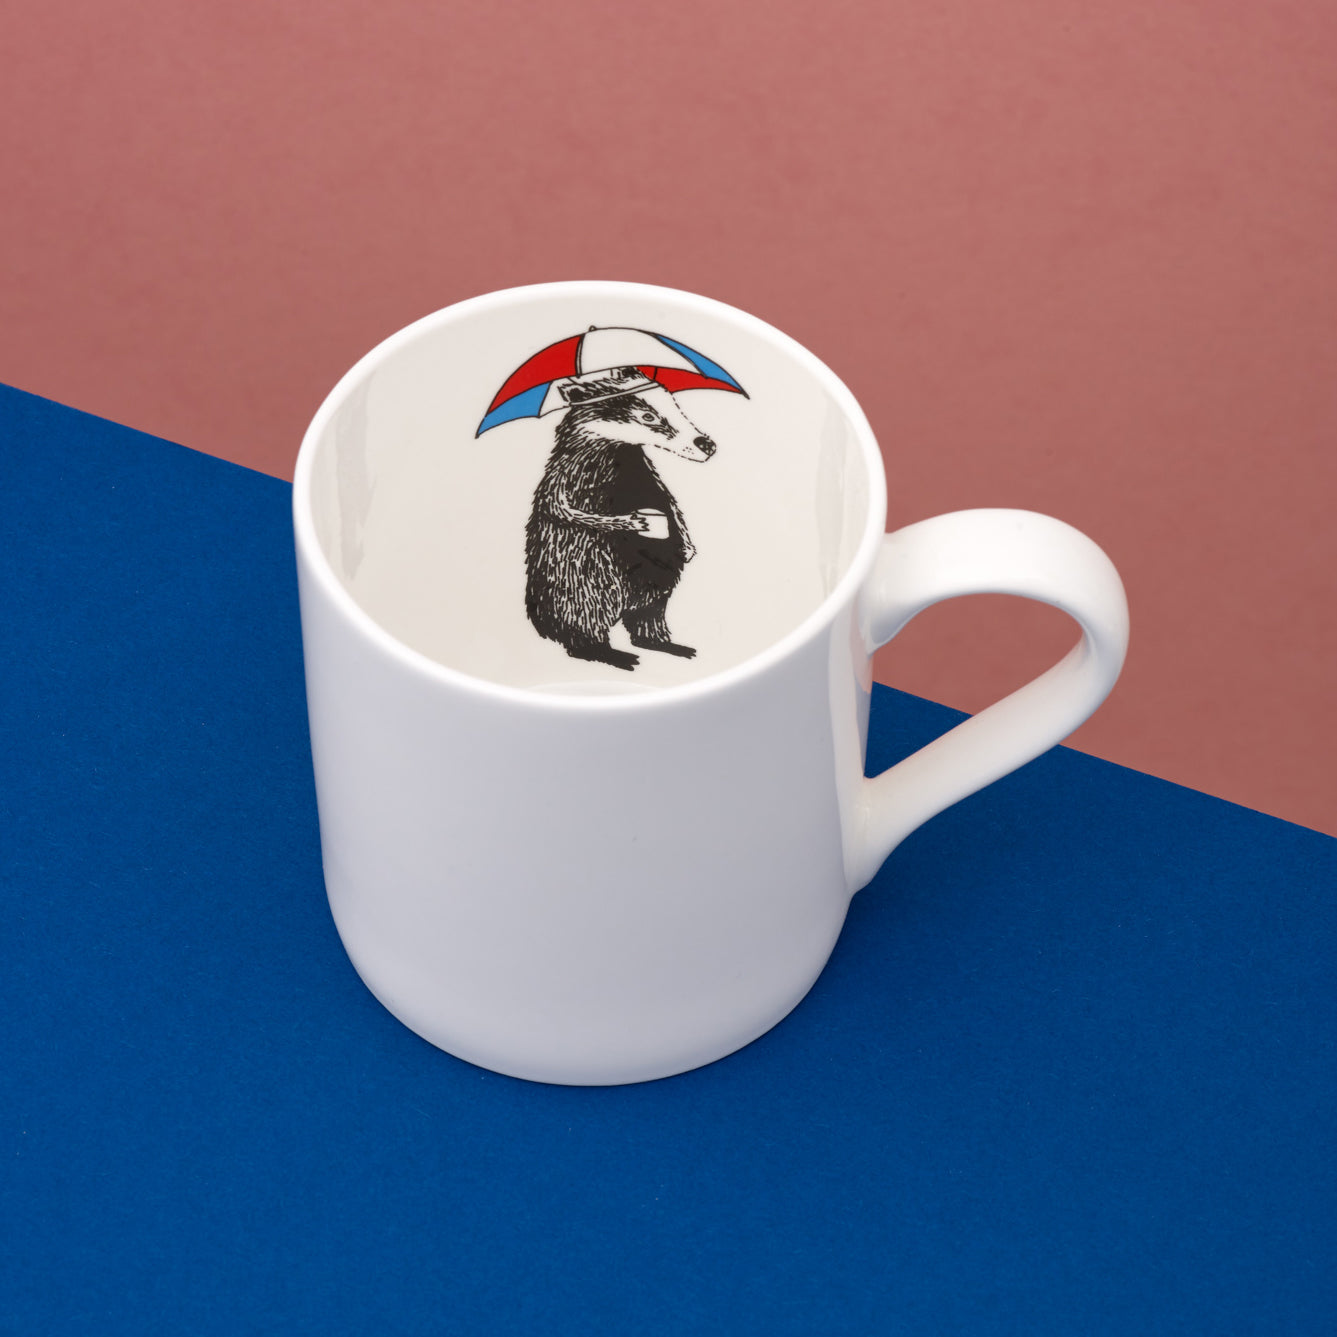 Mr Badger is inside your mug